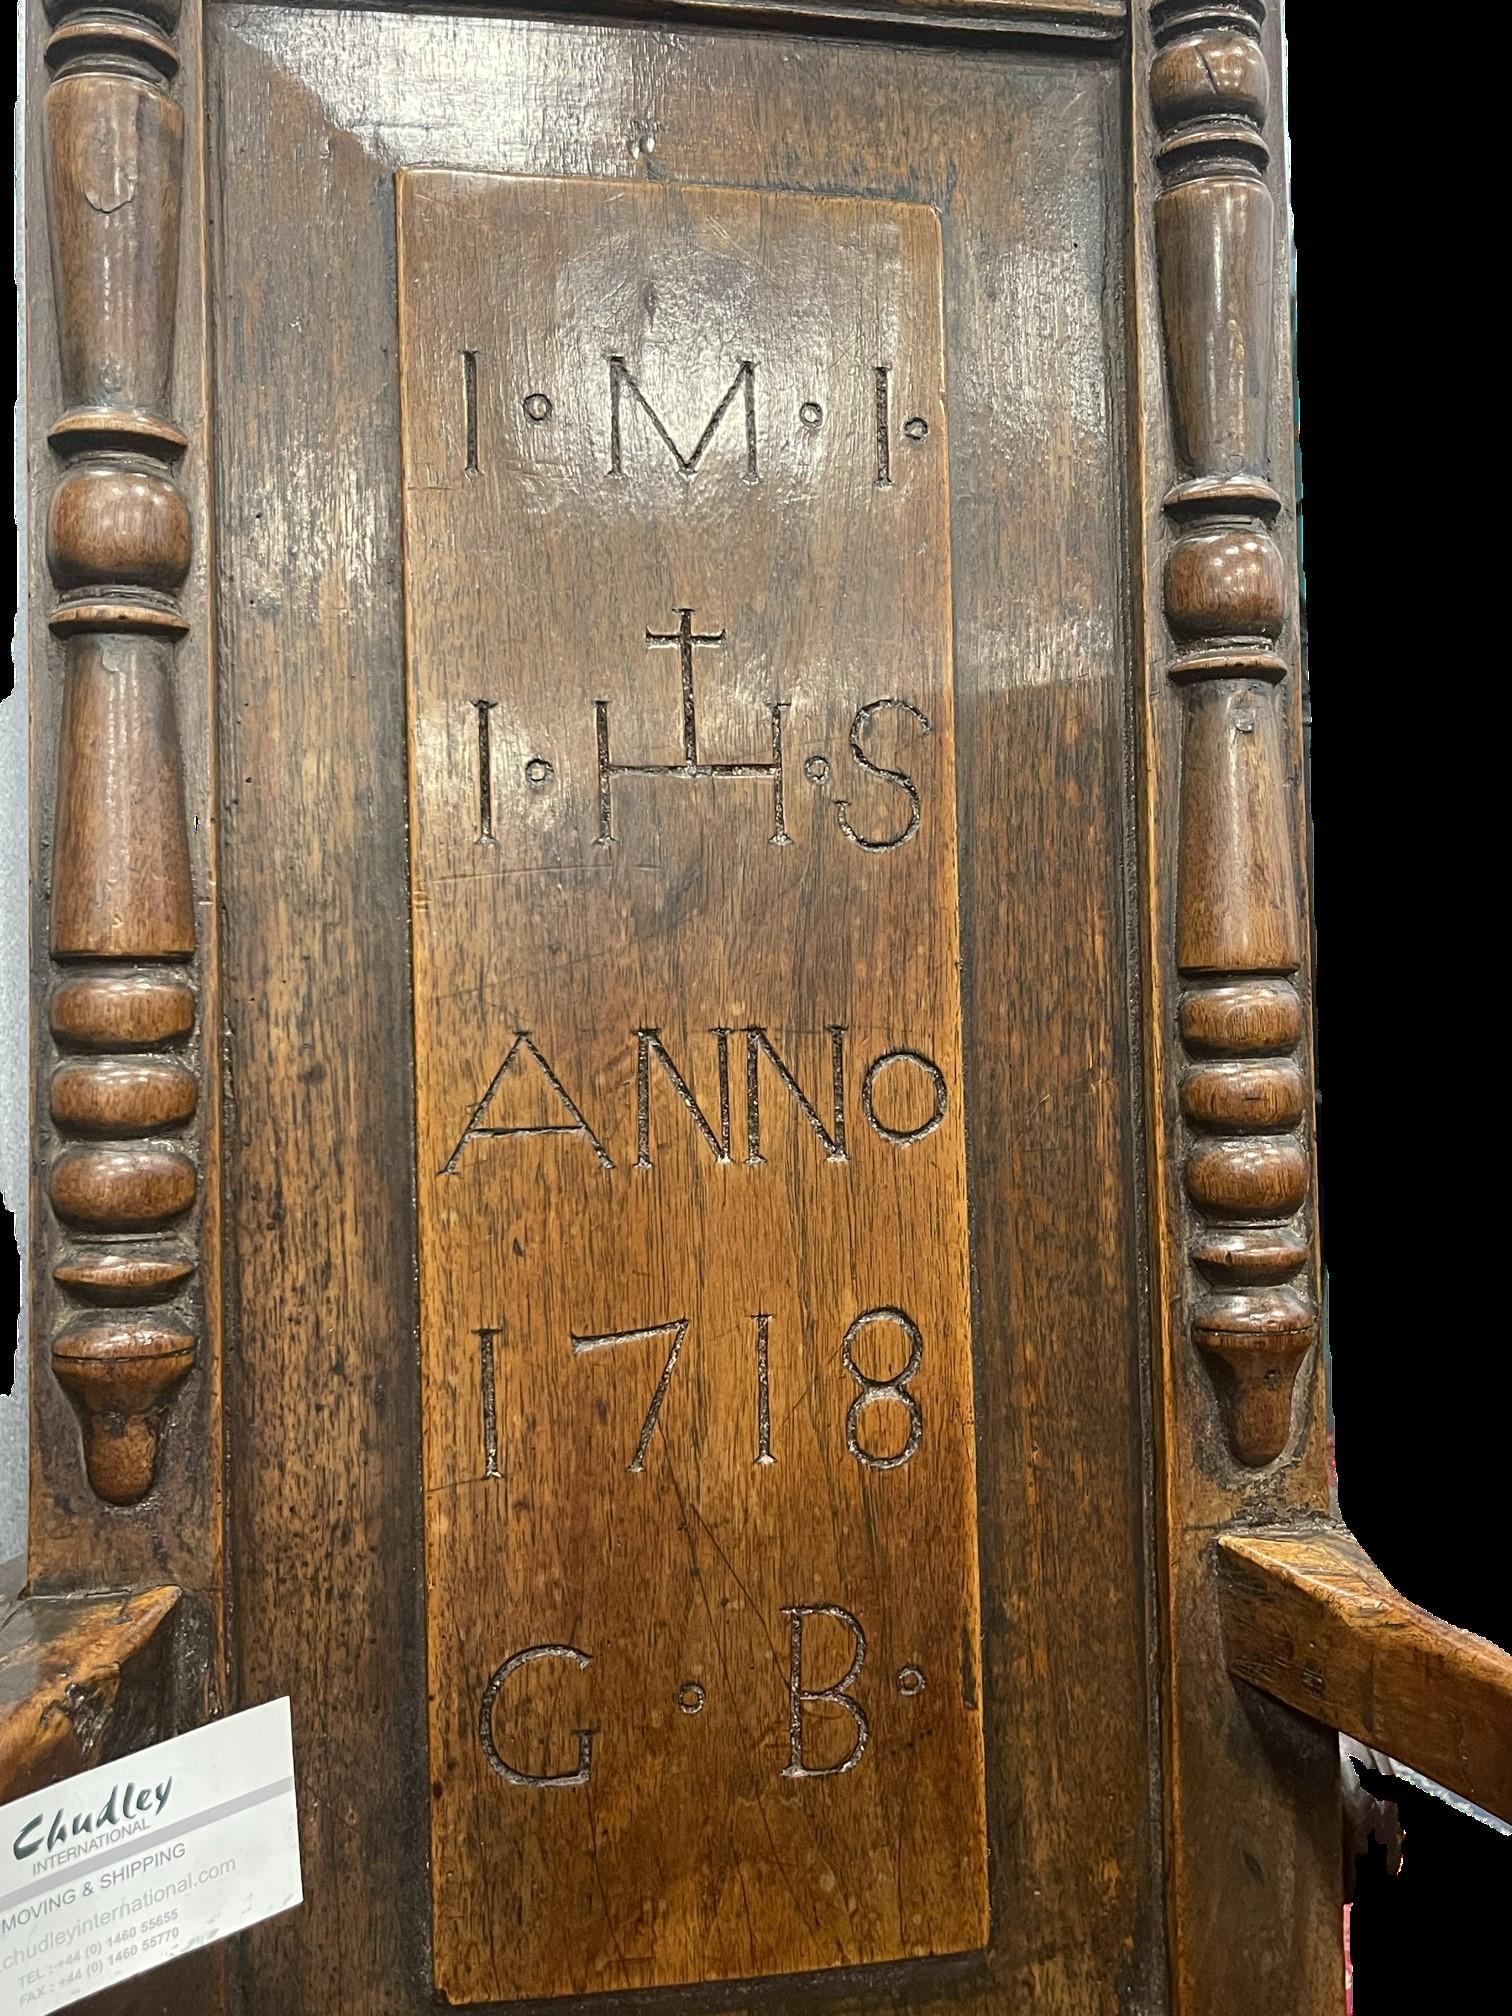 Un exemple exceptionnel d'une chaise caquetoire précoce et rare, avec une crête sculptée sur un dossier inhabituellement étroit, portant l'inscription 